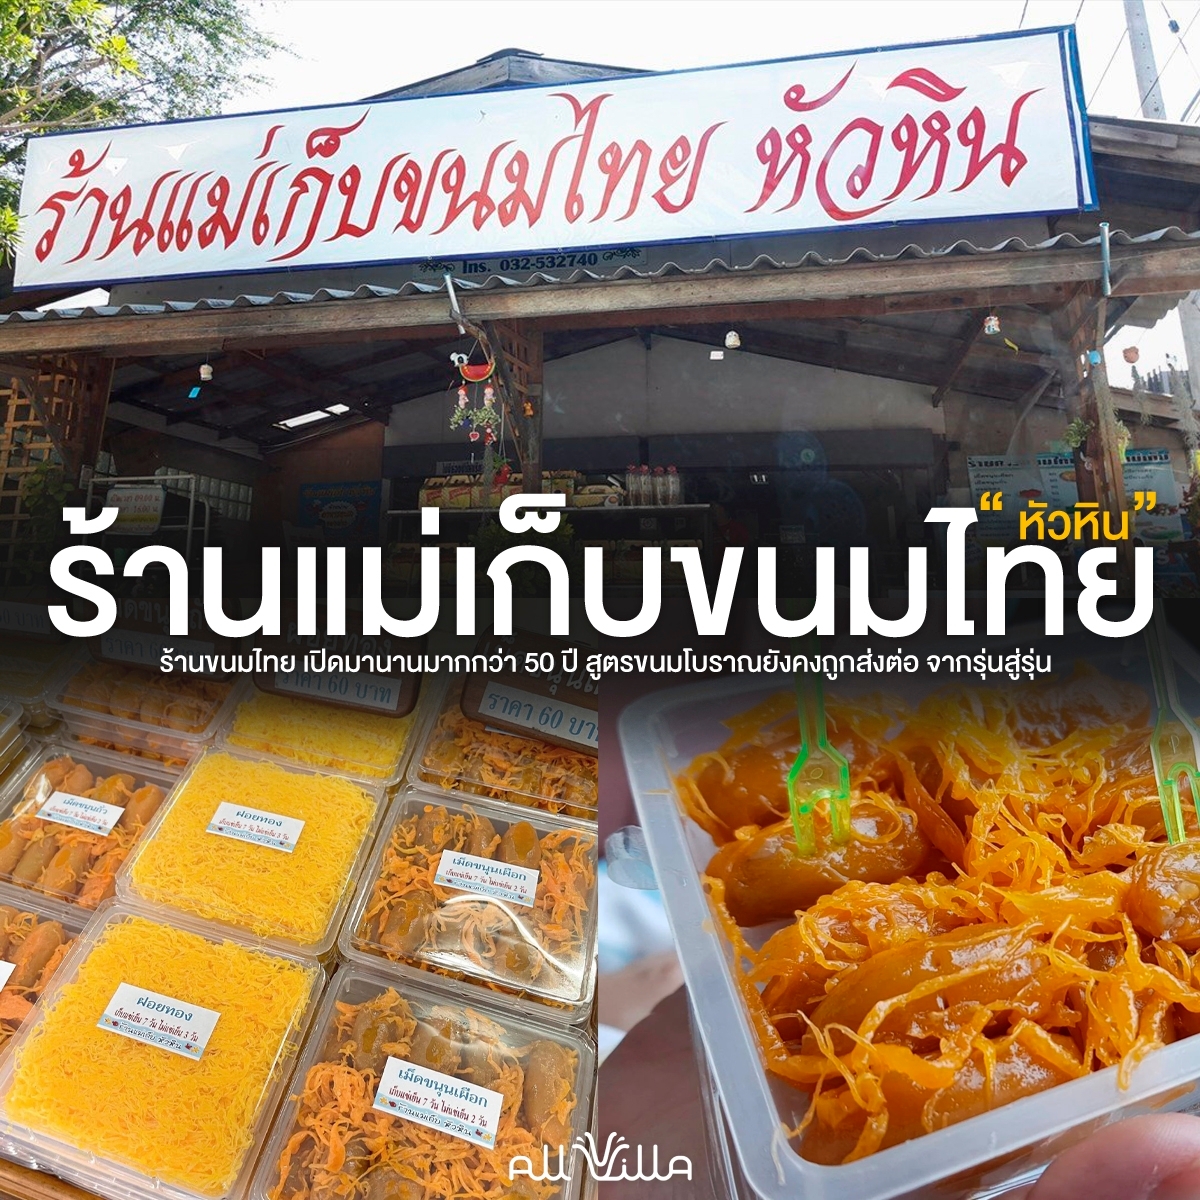 ร้านแม่เก็บขนมไทย